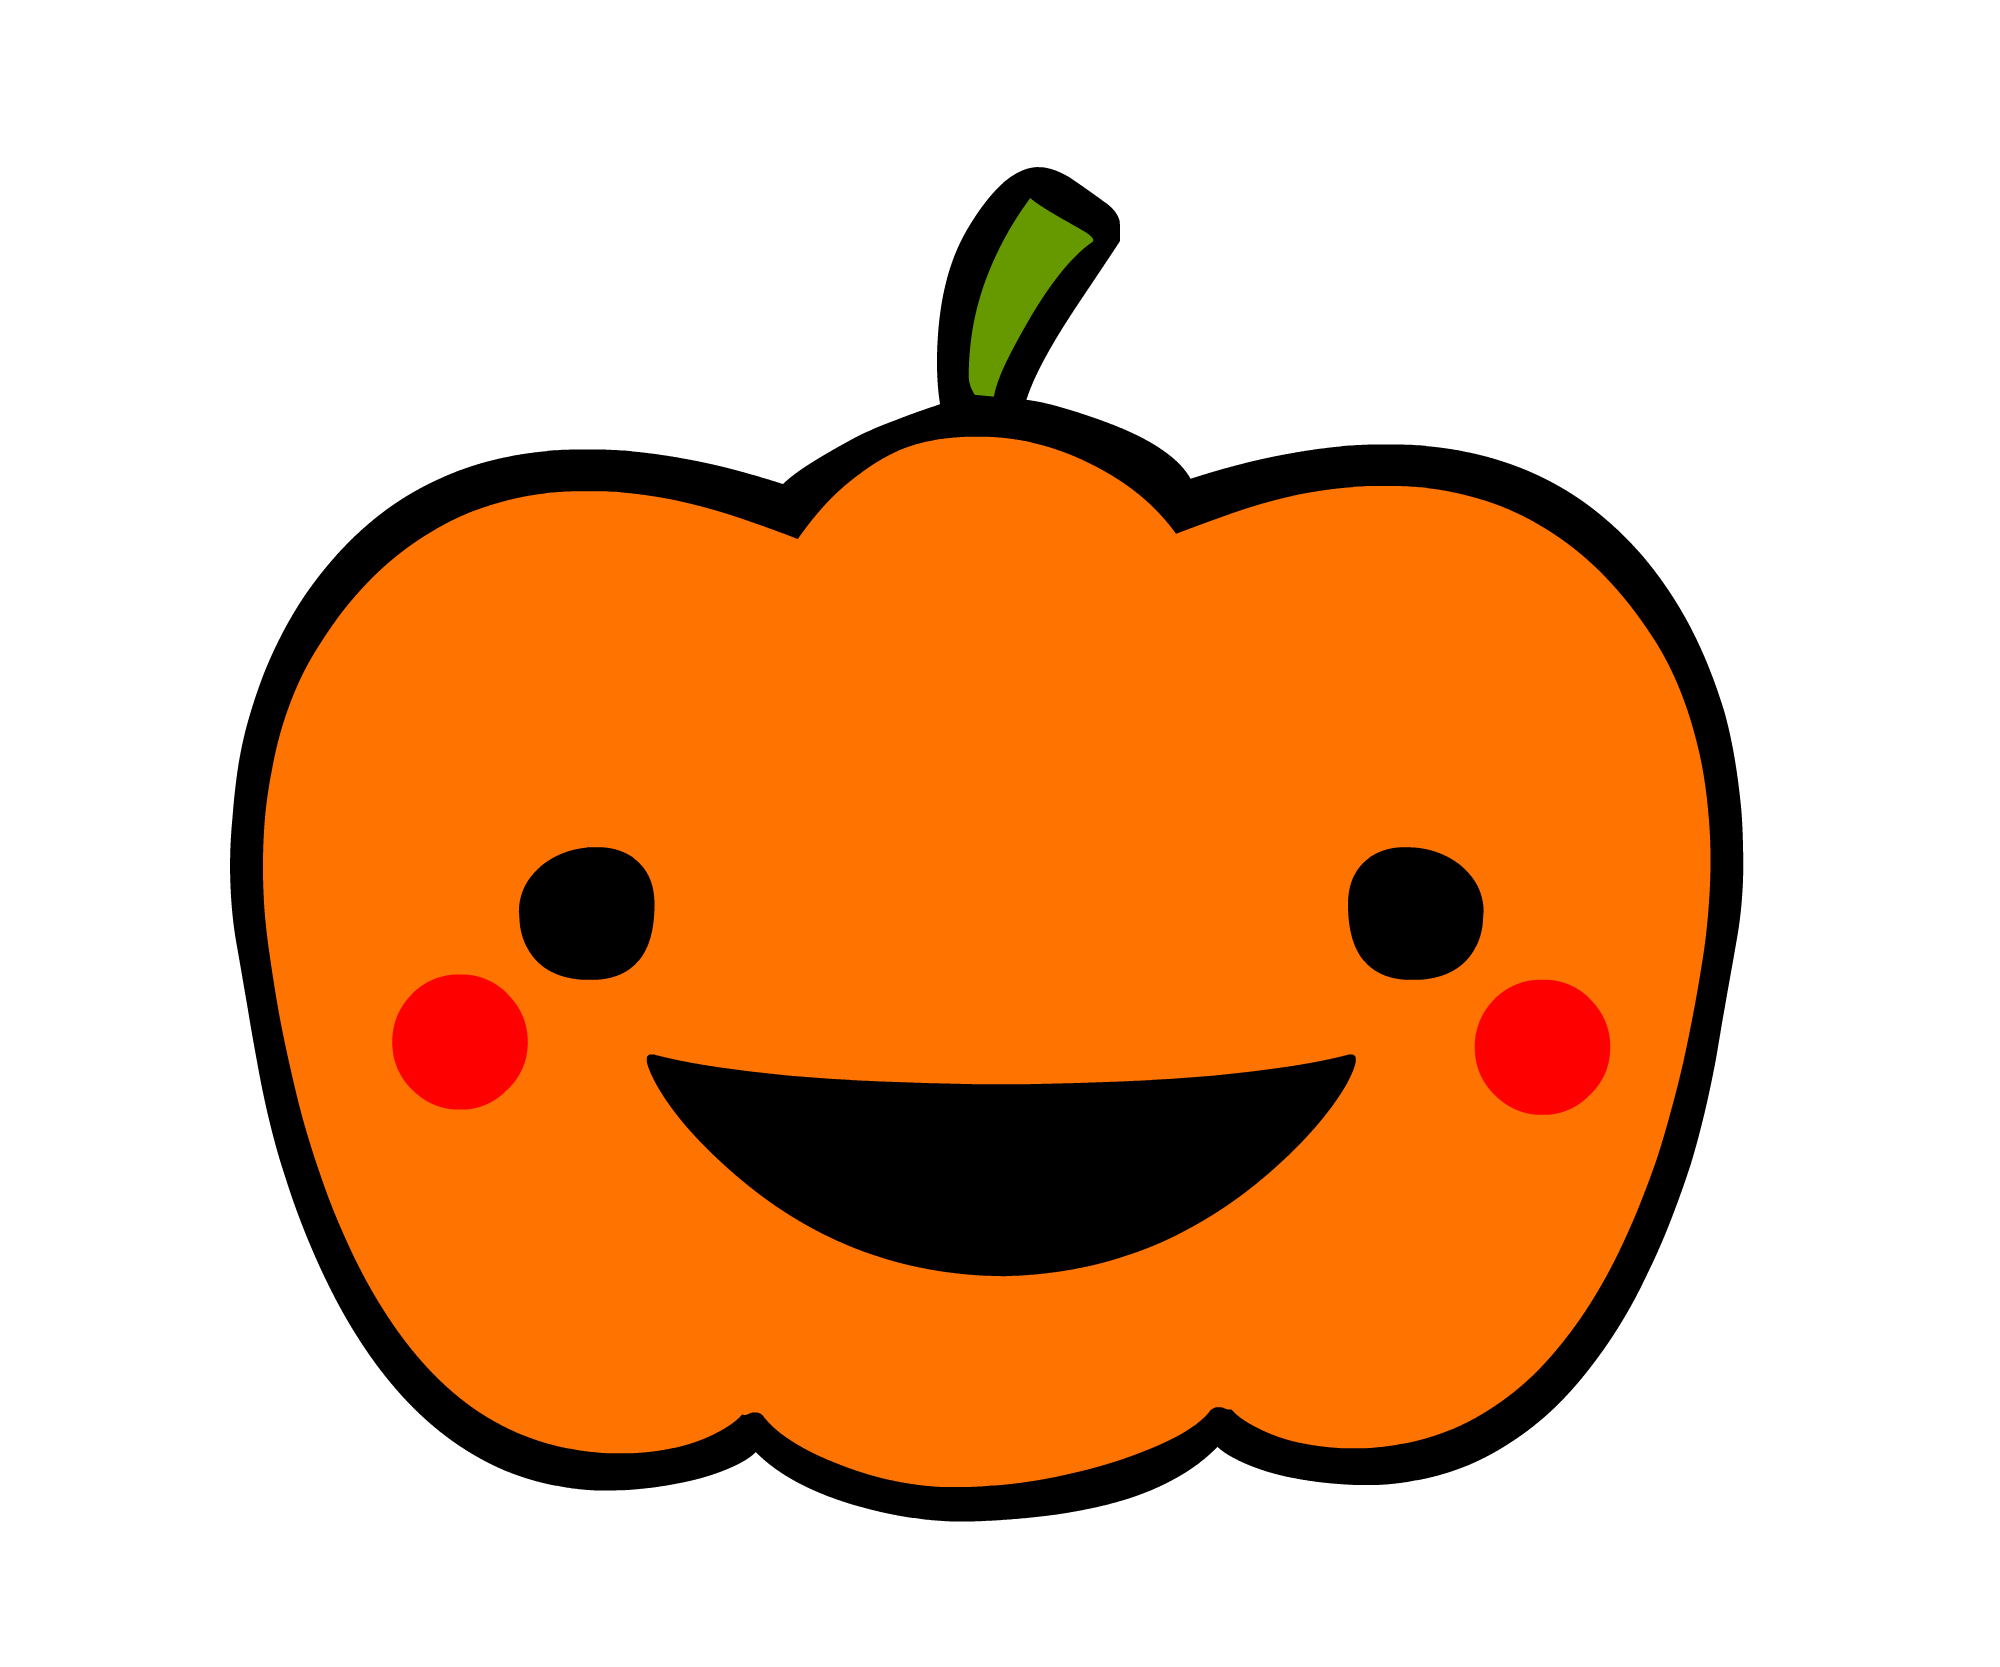 ハロウイン、かぼちゃ無料イラスト素材: イラスト無料素材かわいい系